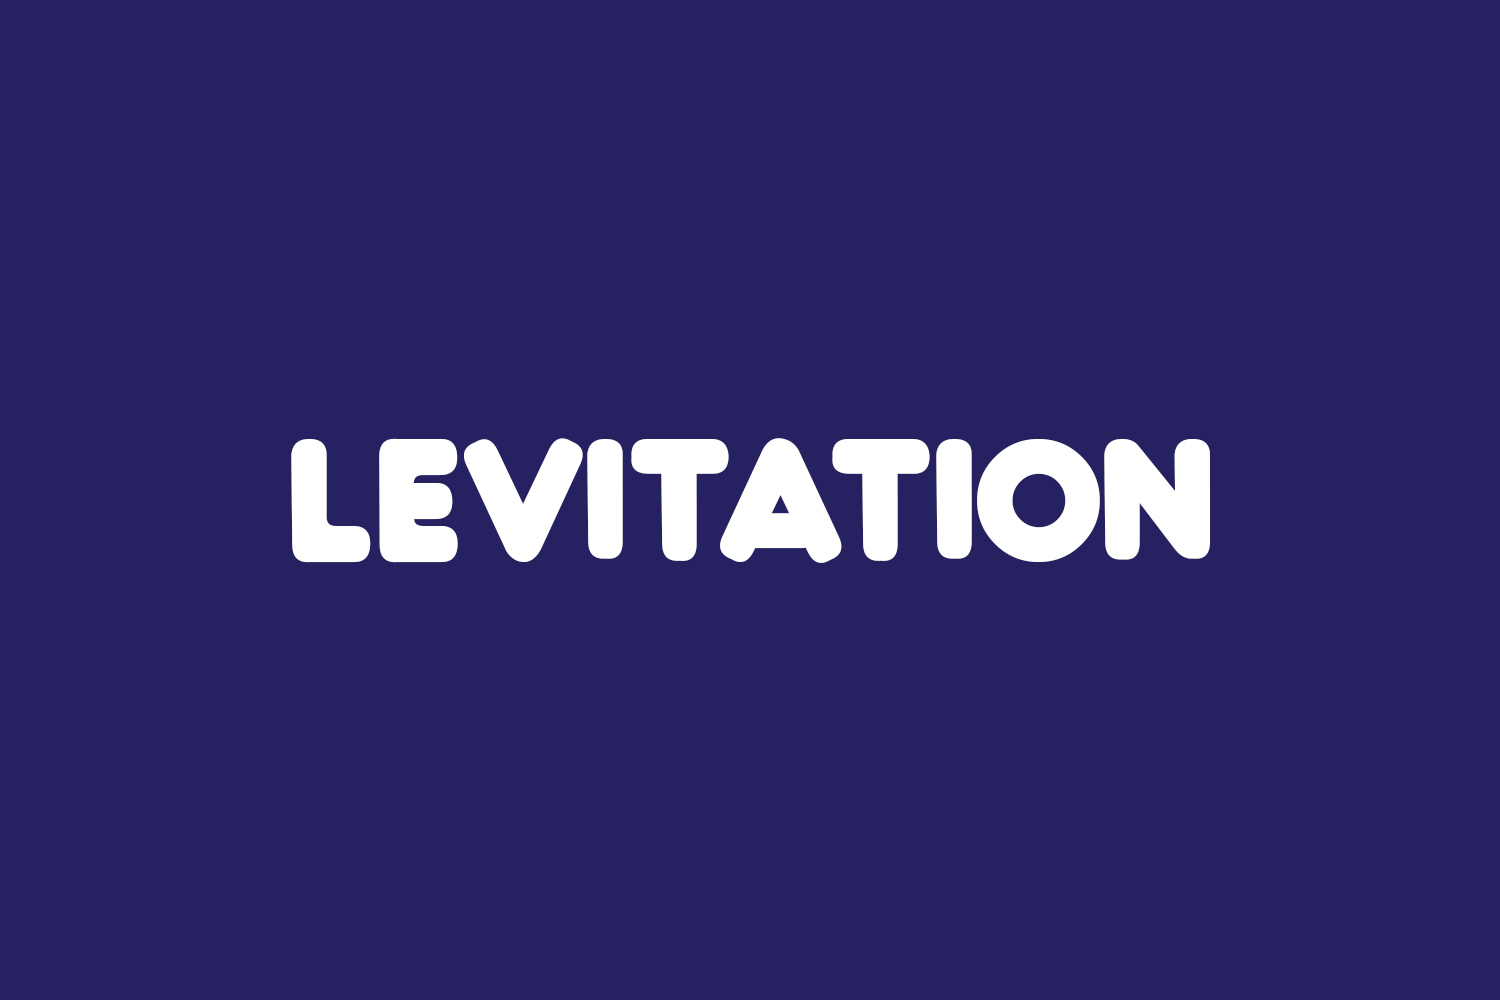 Levitation Free Font